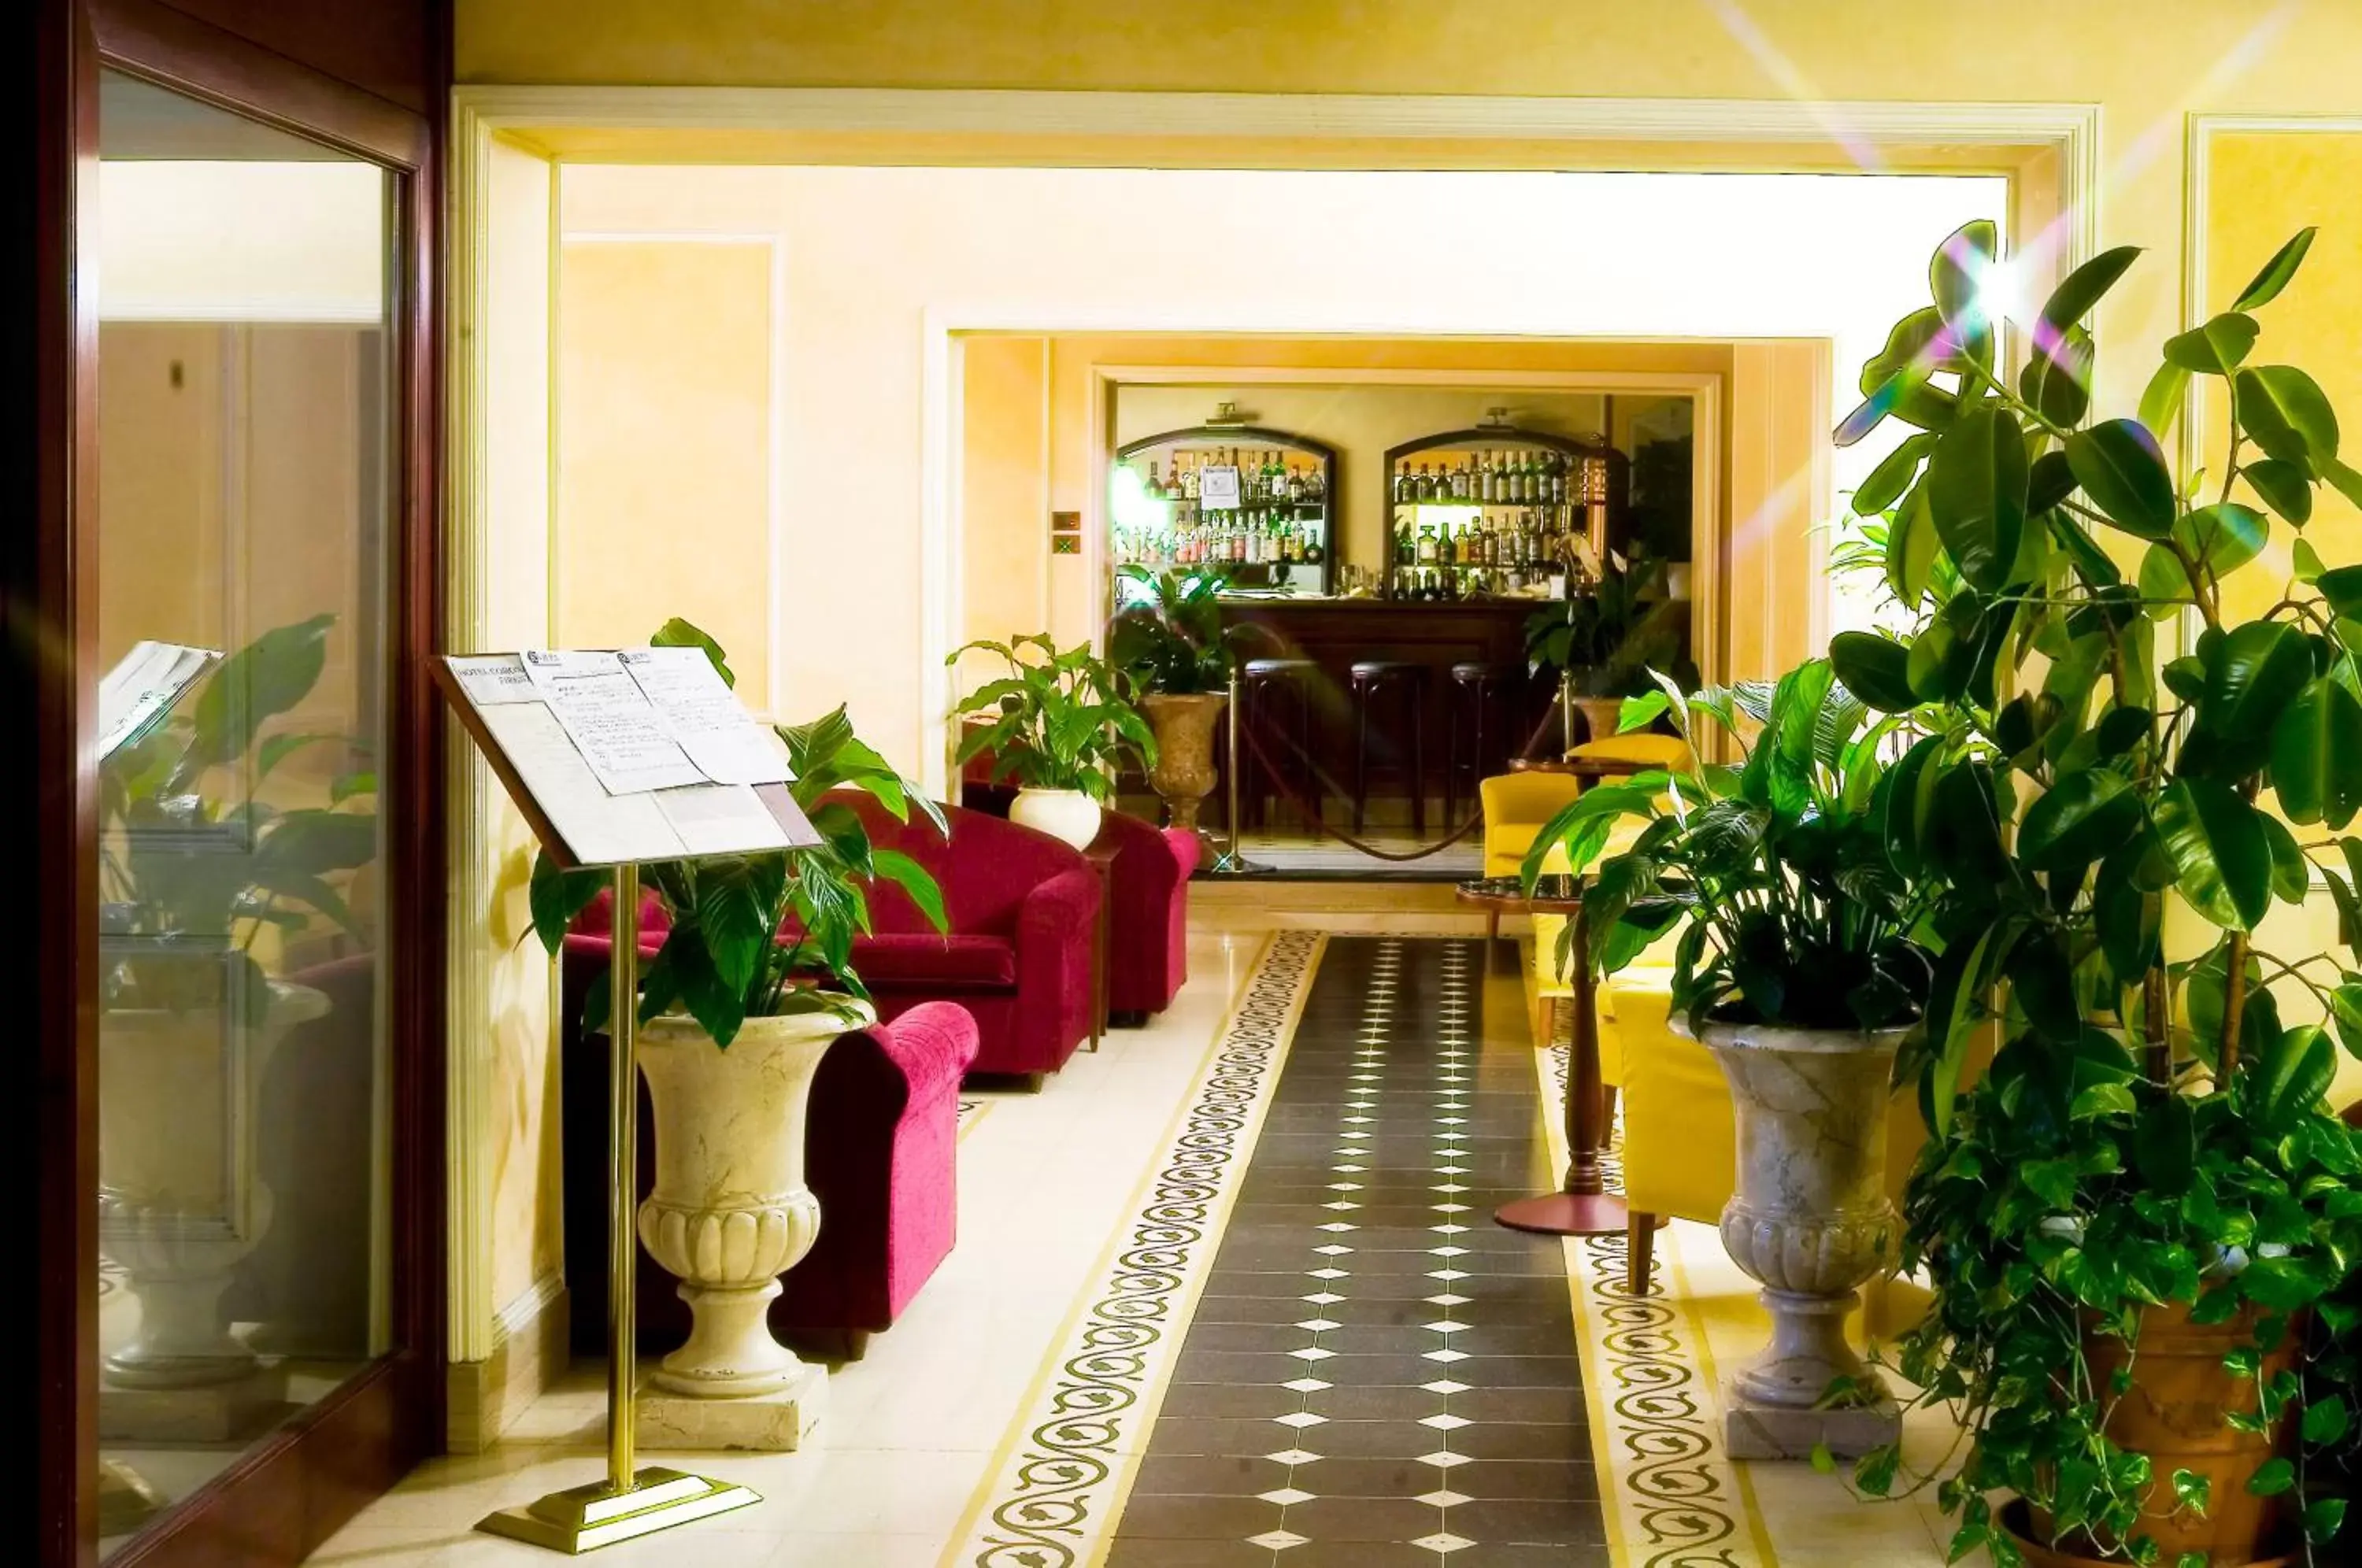 Lobby or reception, Lobby/Reception in Corona D'Italia